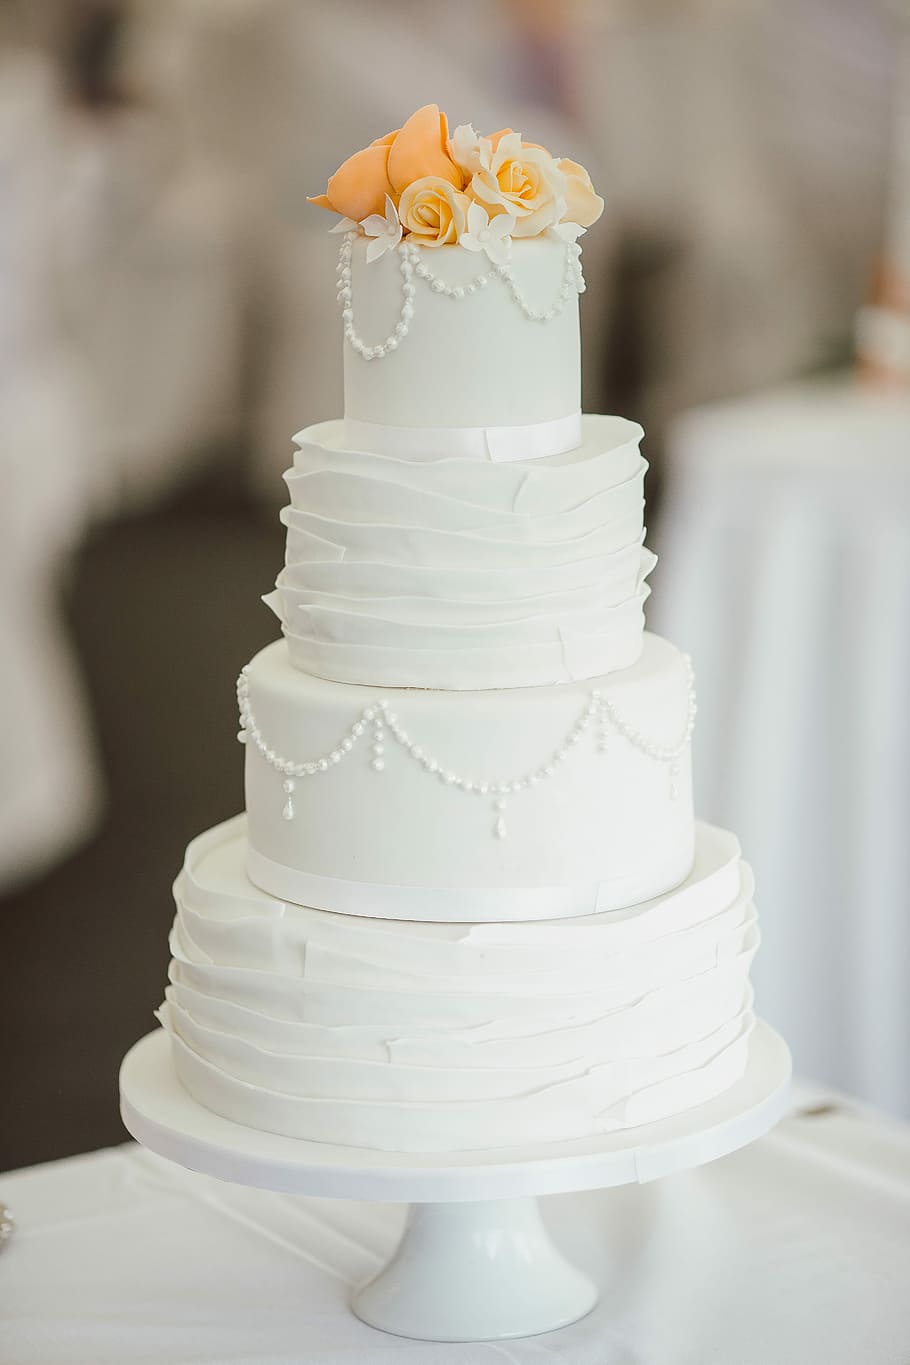 4-layer, 4- layer cake, table, wedding cake, wedding cakes, food, decoration, white, marriage, celebration